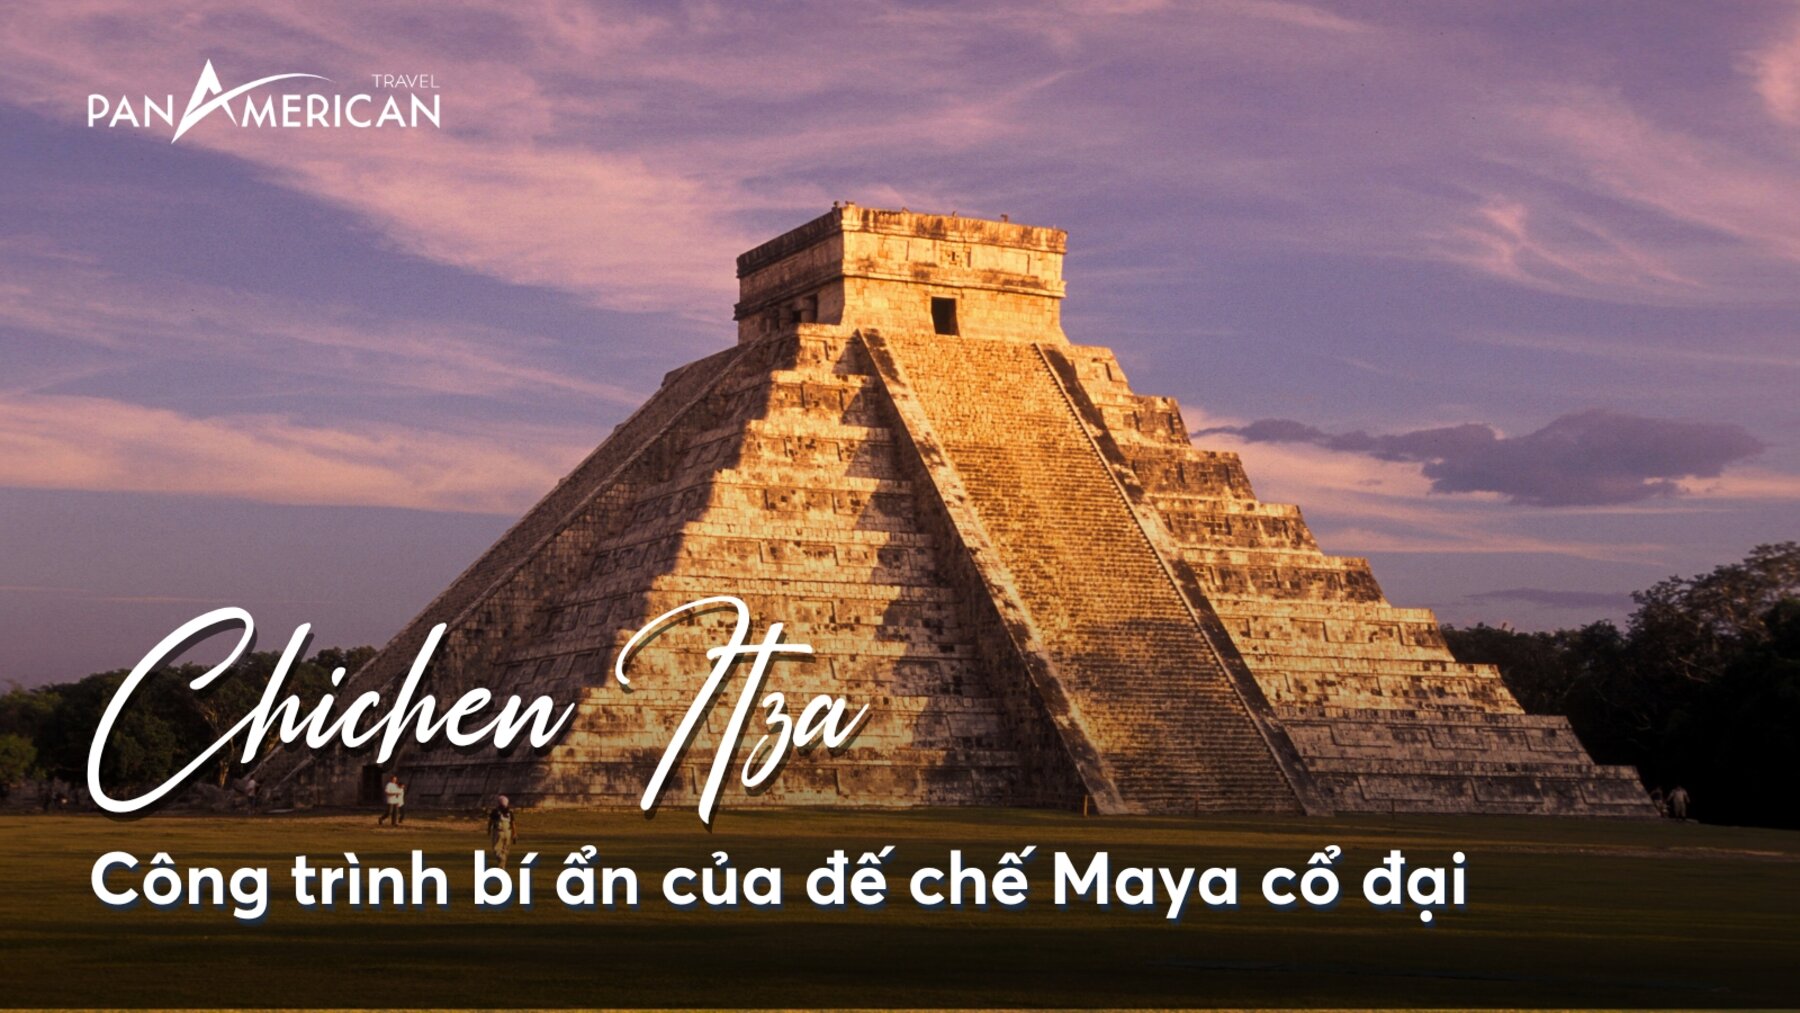 Chichen Itza: Công trình bí ẩn của đế chế Maya cổ đại